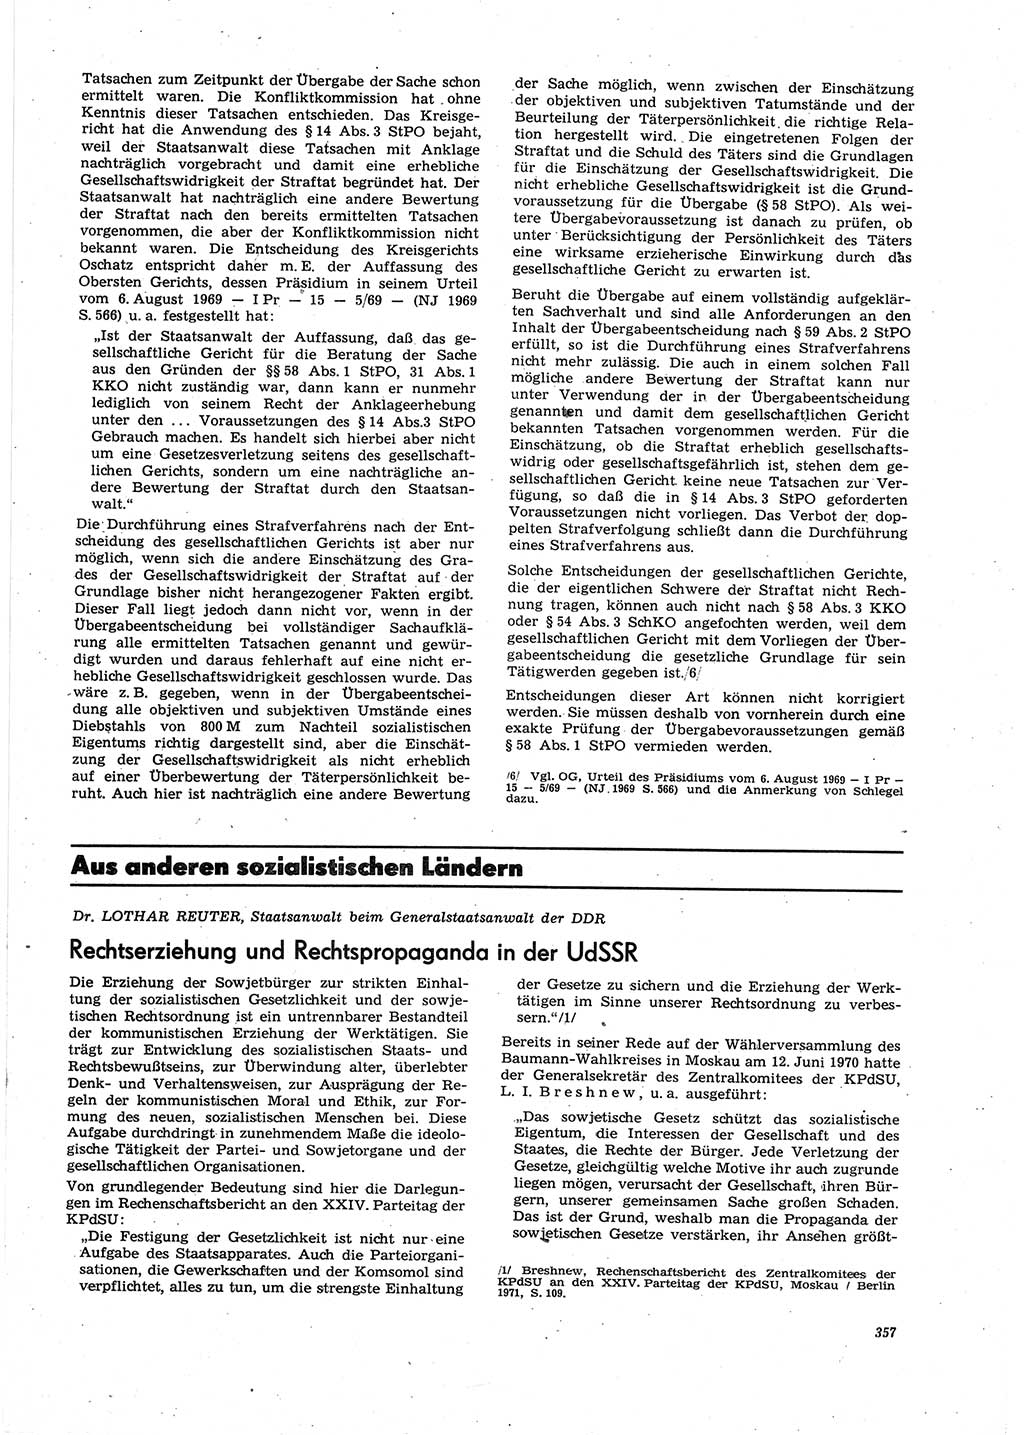 Neue Justiz (NJ), Zeitschrift für Recht und Rechtswissenschaft [Deutsche Demokratische Republik (DDR)], 27. Jahrgang 1973, Seite 357 (NJ DDR 1973, S. 357)